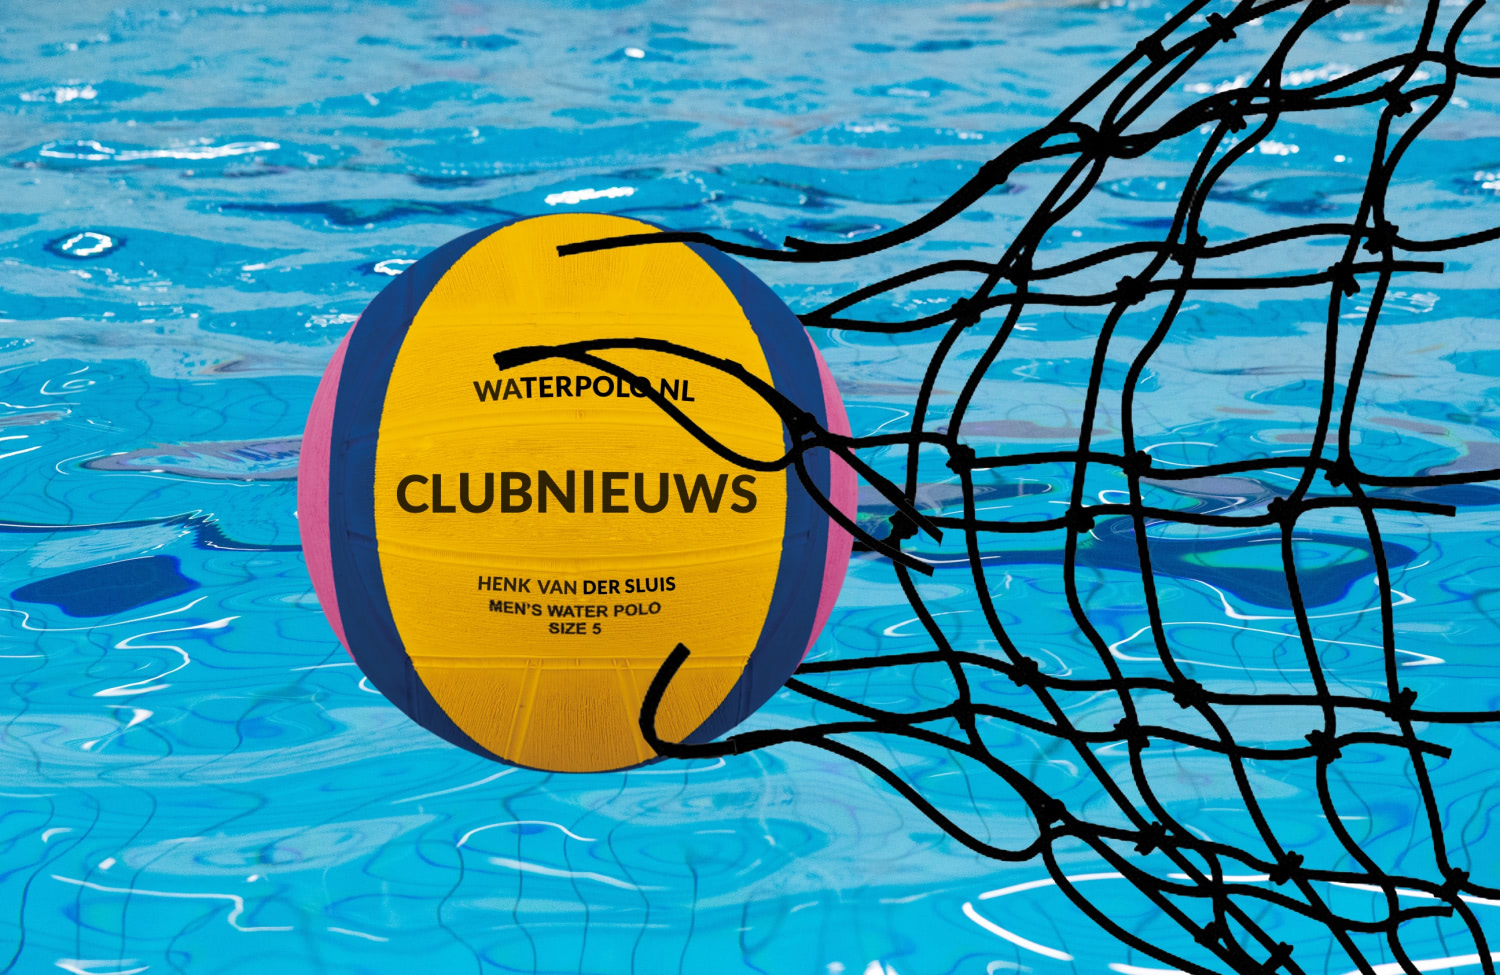 Waterpolo.nl Clubnieuws van Henk